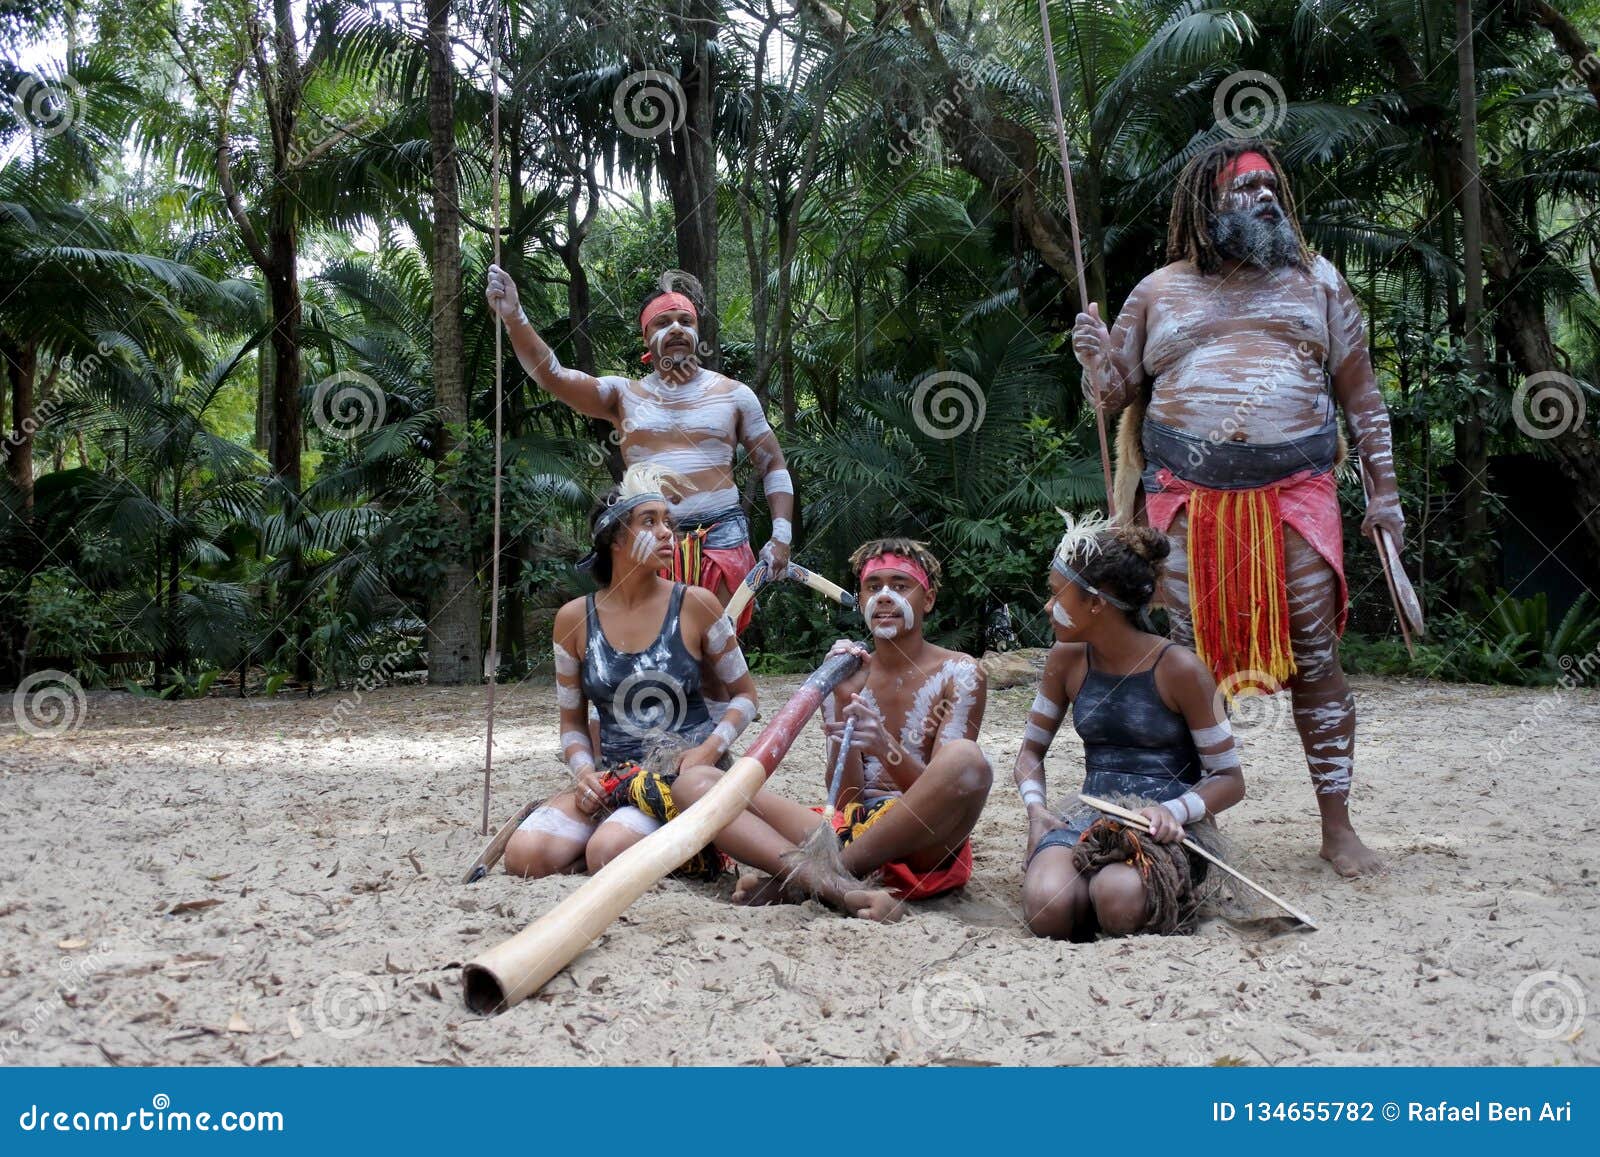 indigenous australians people in queensland australia